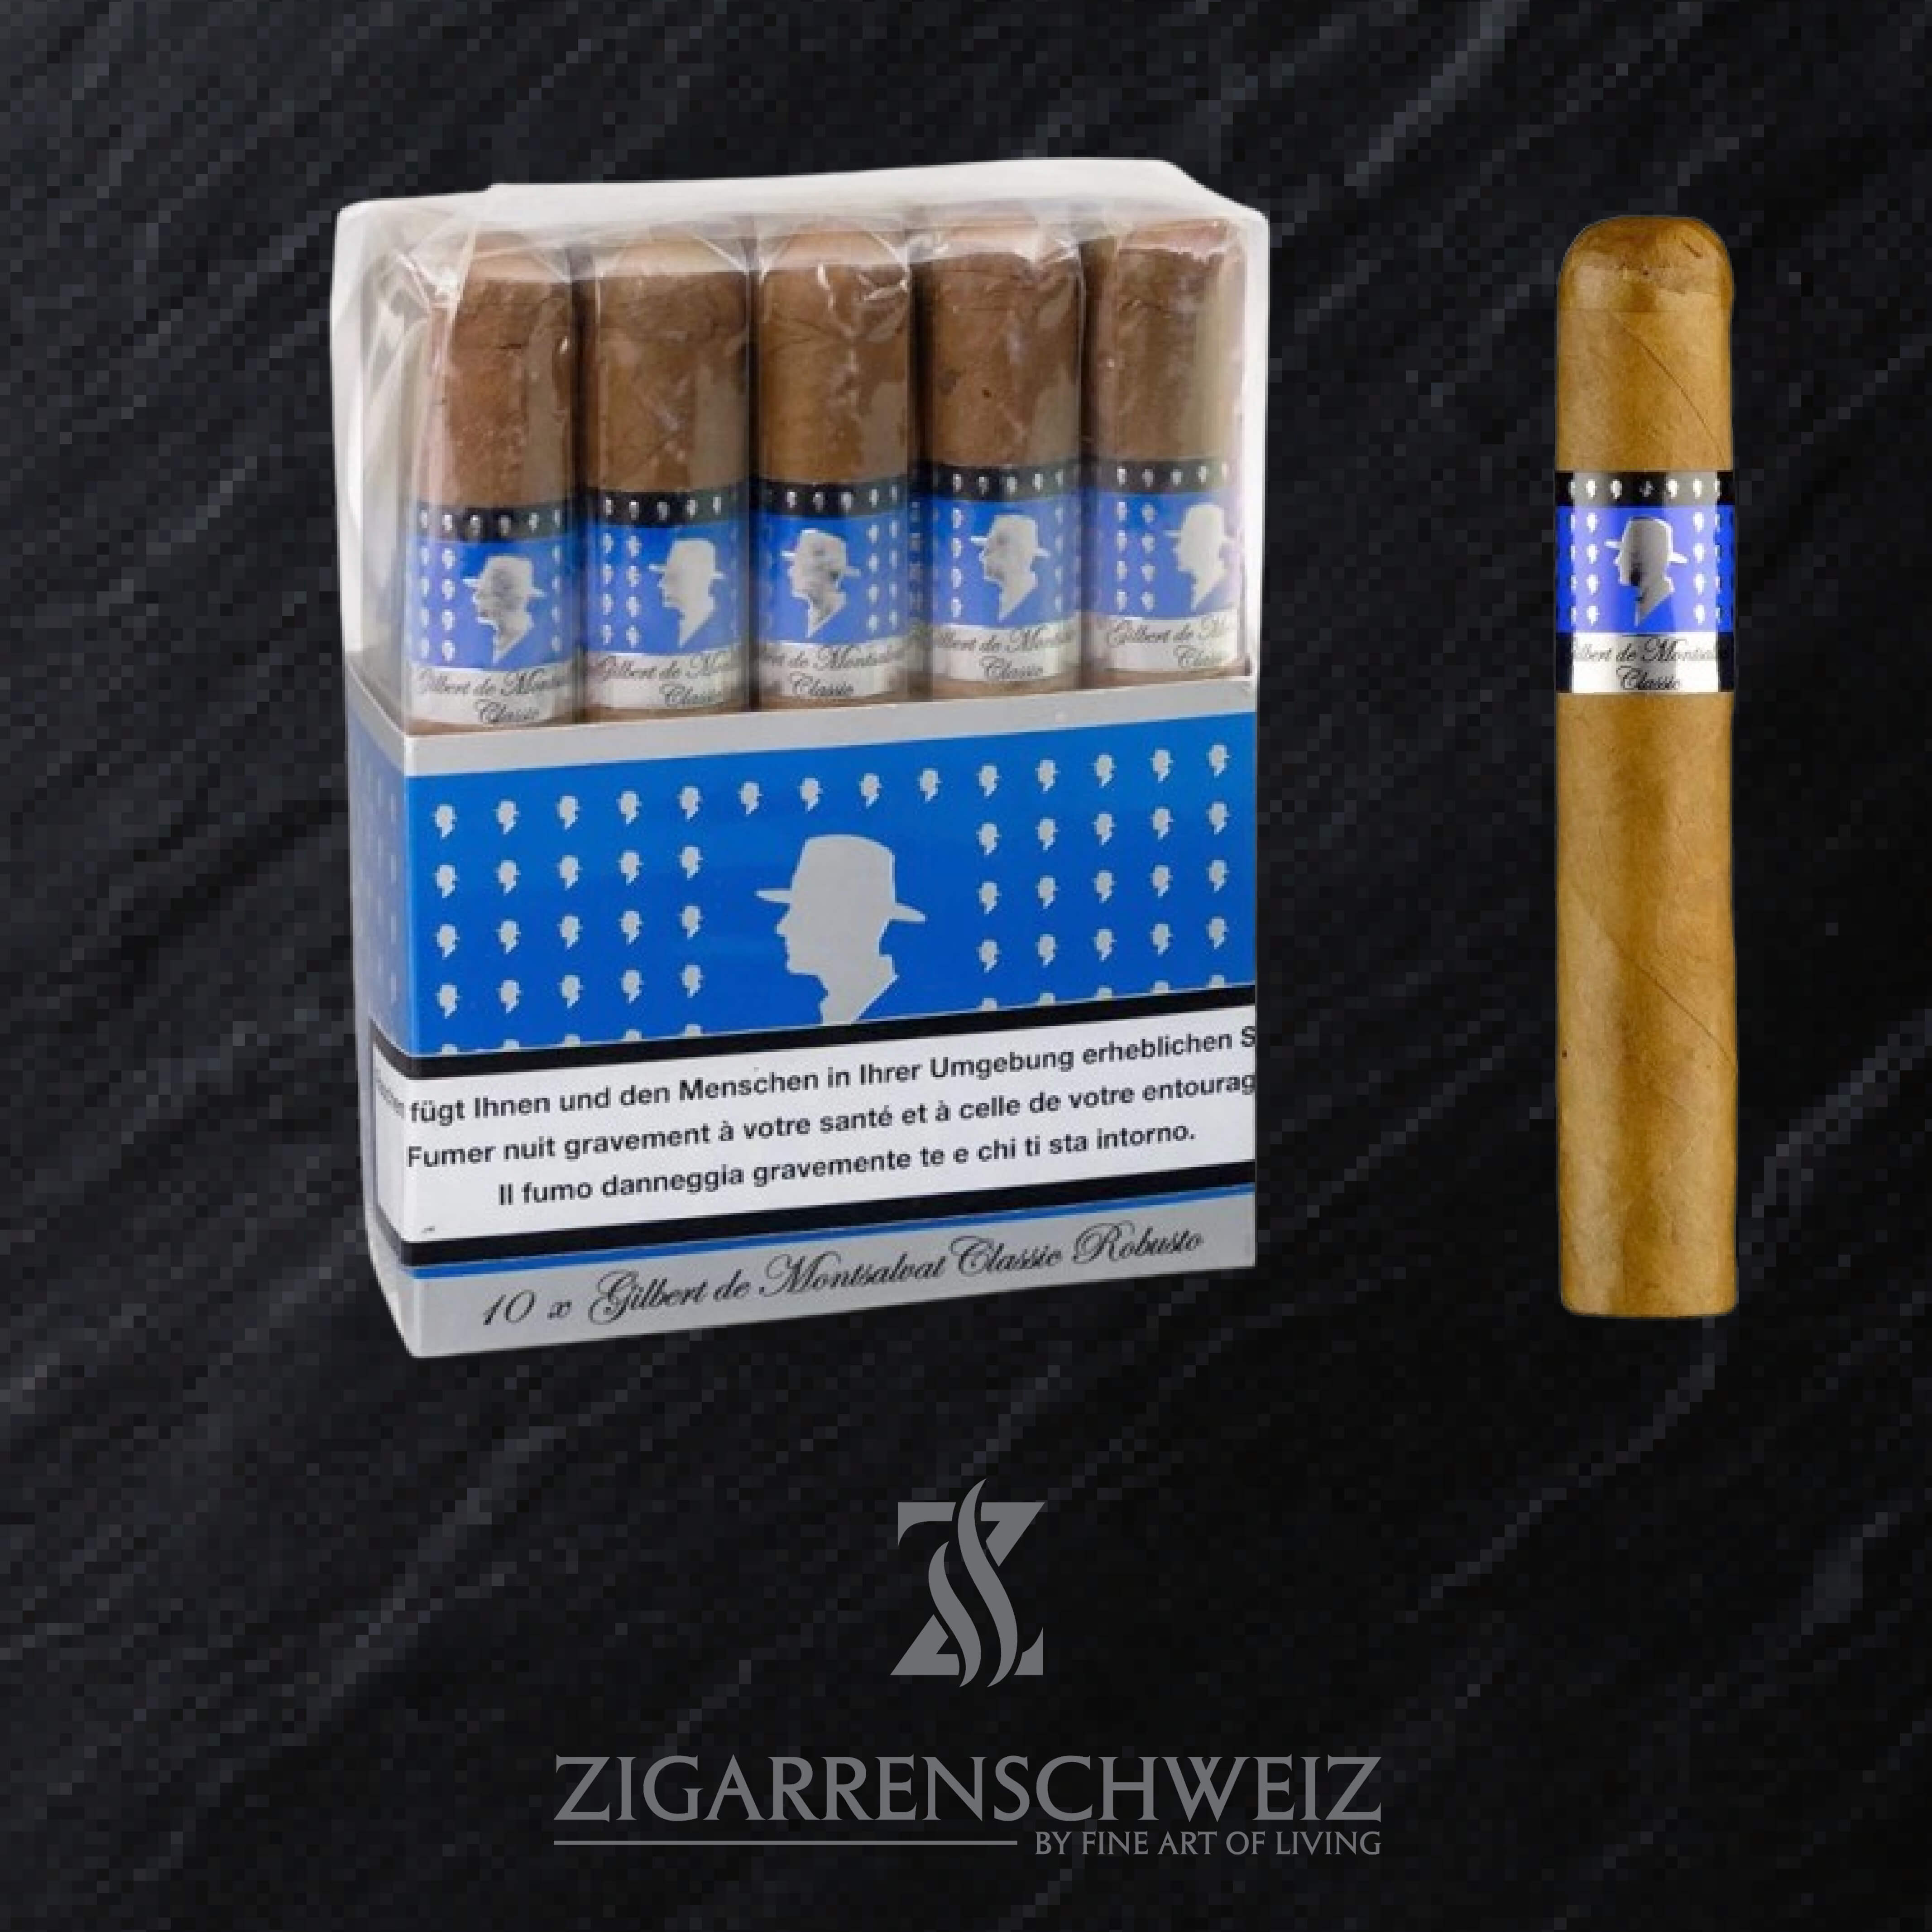 Gilbert de Montsalvat Classic Robusto Zigarren Bundle